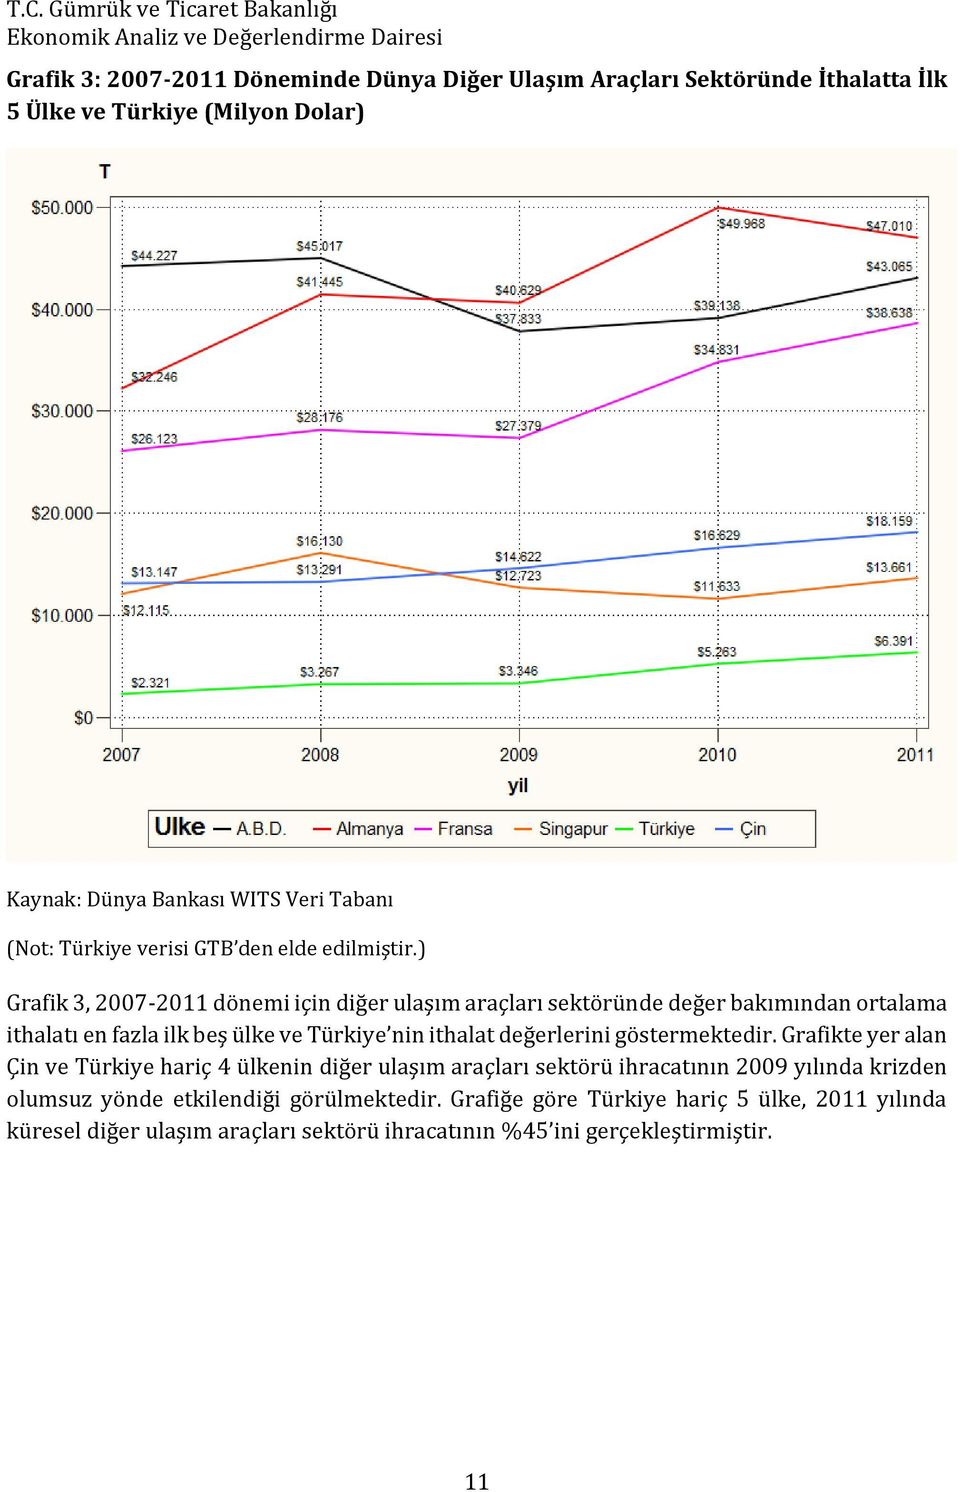 ) Grafik 3, 2007-2011 dönemi için diğer ulaşım araçları sektöründe değer bakımından ortalama ithalatı en fazla ilk beş ülke ve Türkiye nin ithalat değerlerini